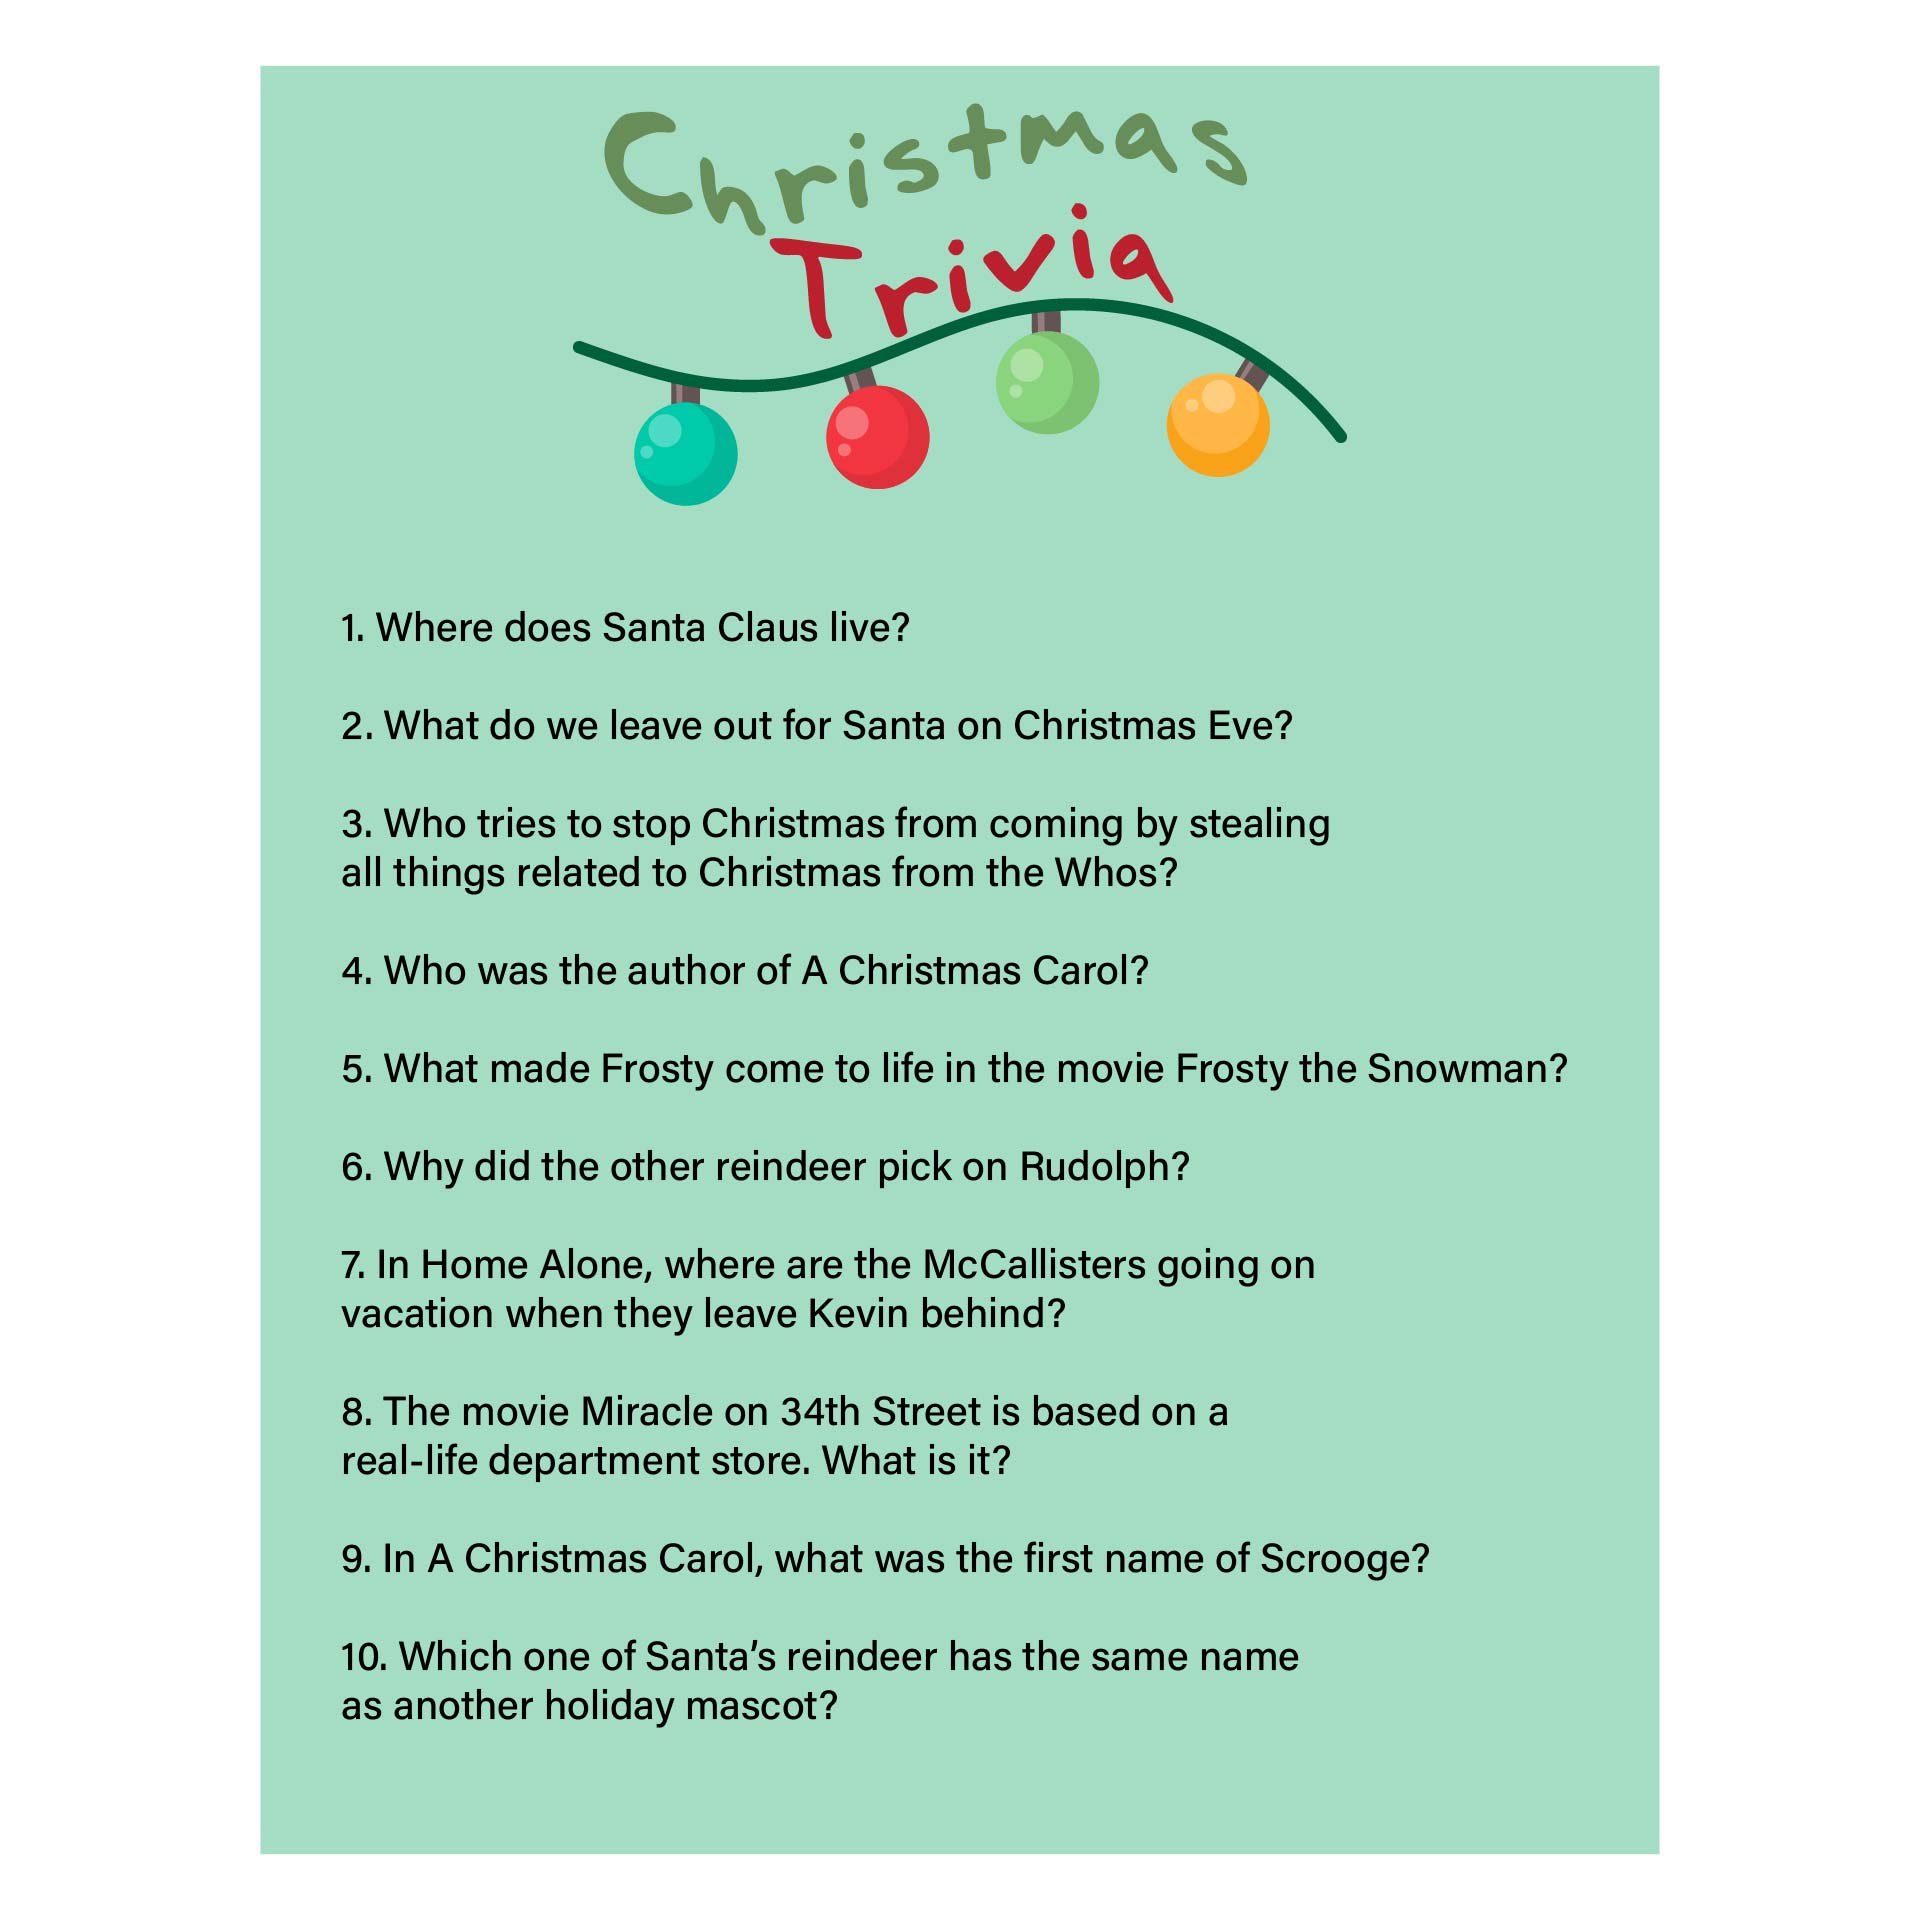 Printable Christmas Games Trivia and Answers